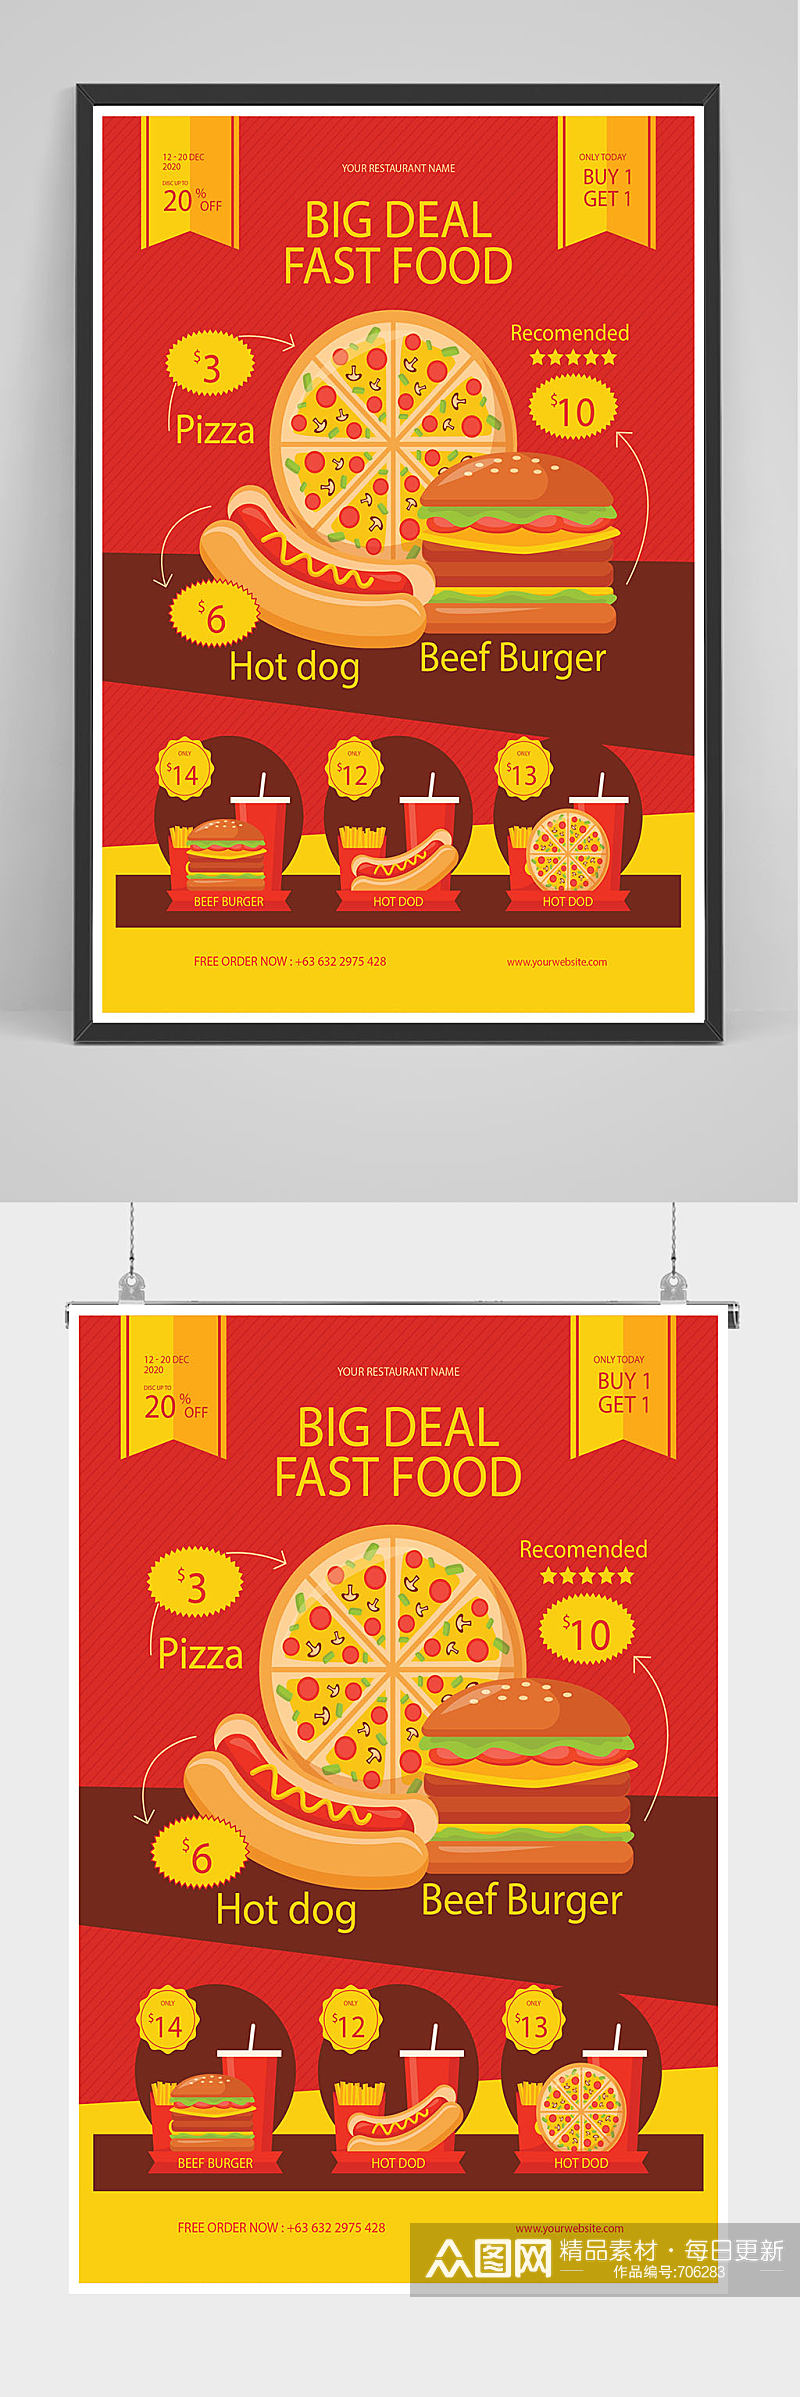 红色美味西餐披萨海报设计素材